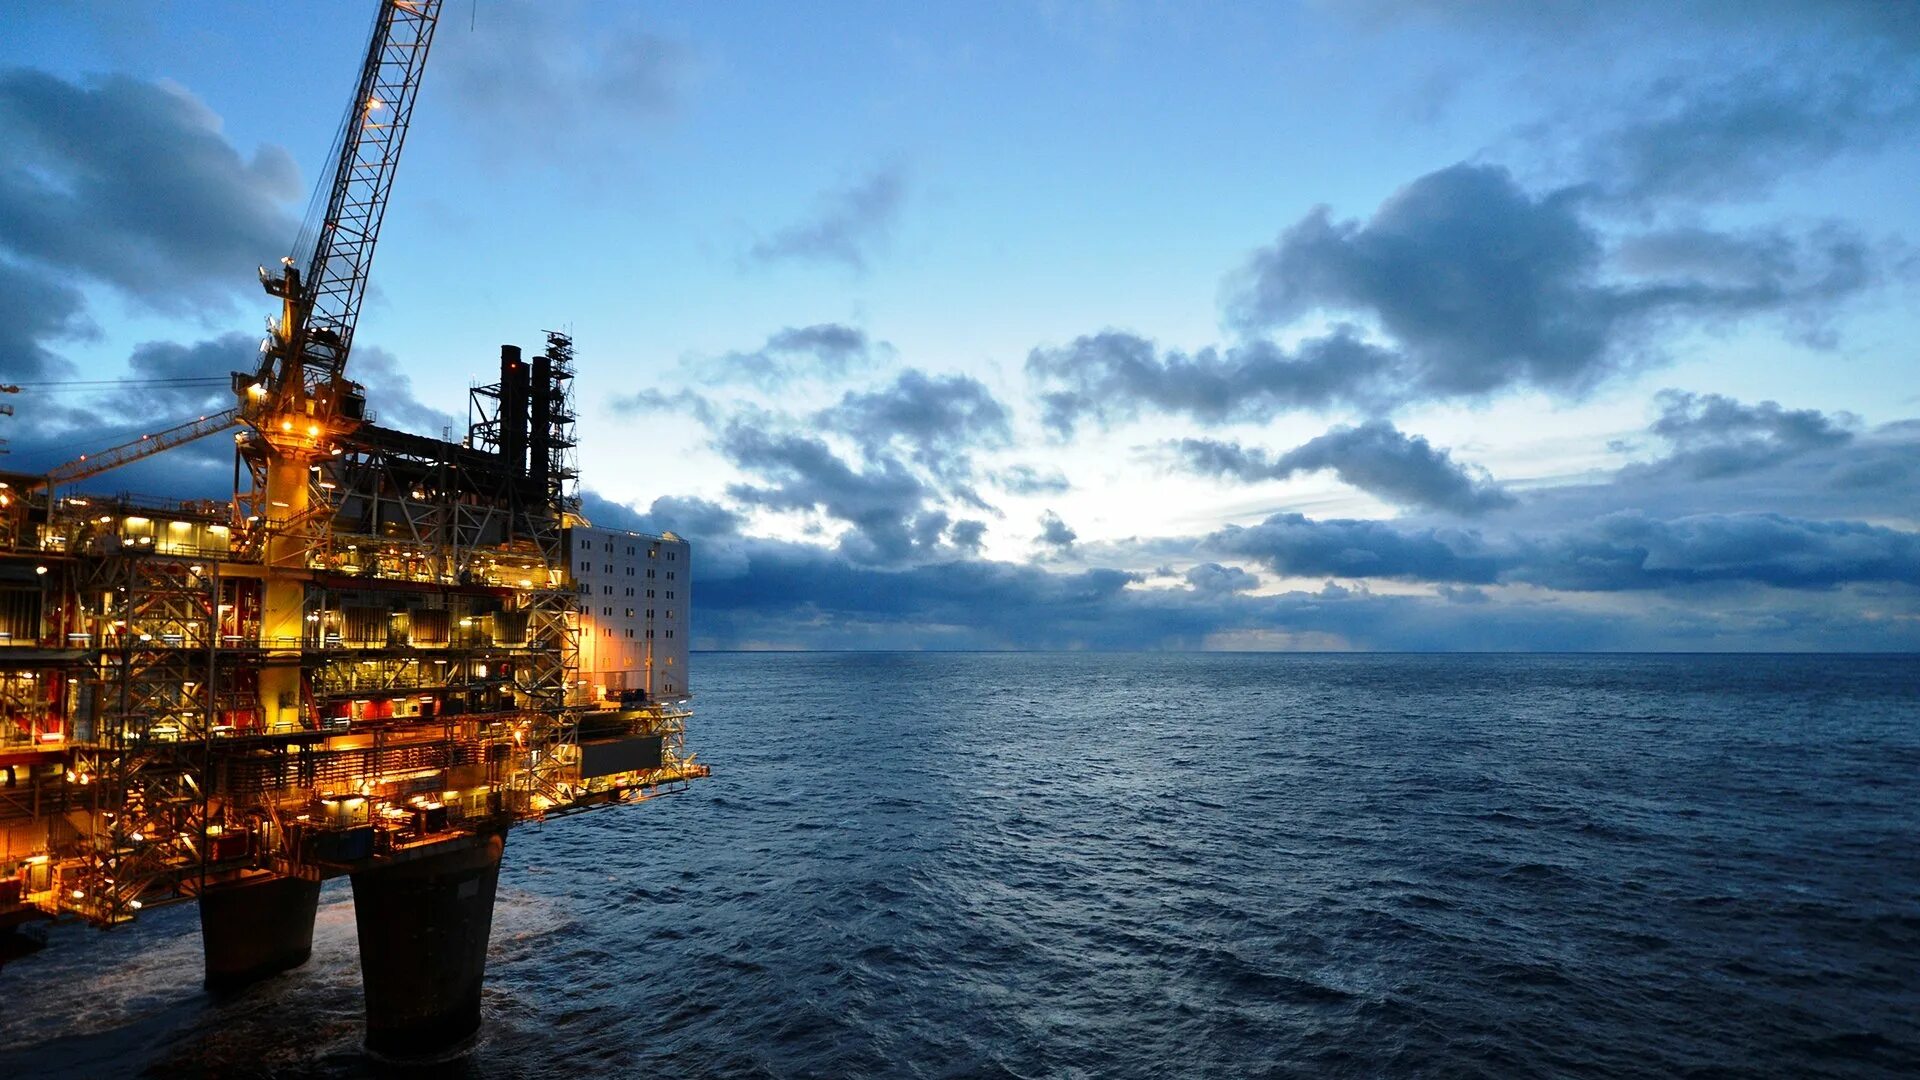 Нефть газ 2016. Нефтяная вышка на воде. Добыча нефти в море. Нефтегазовая промышленность. Нефтедобывающая платформа.